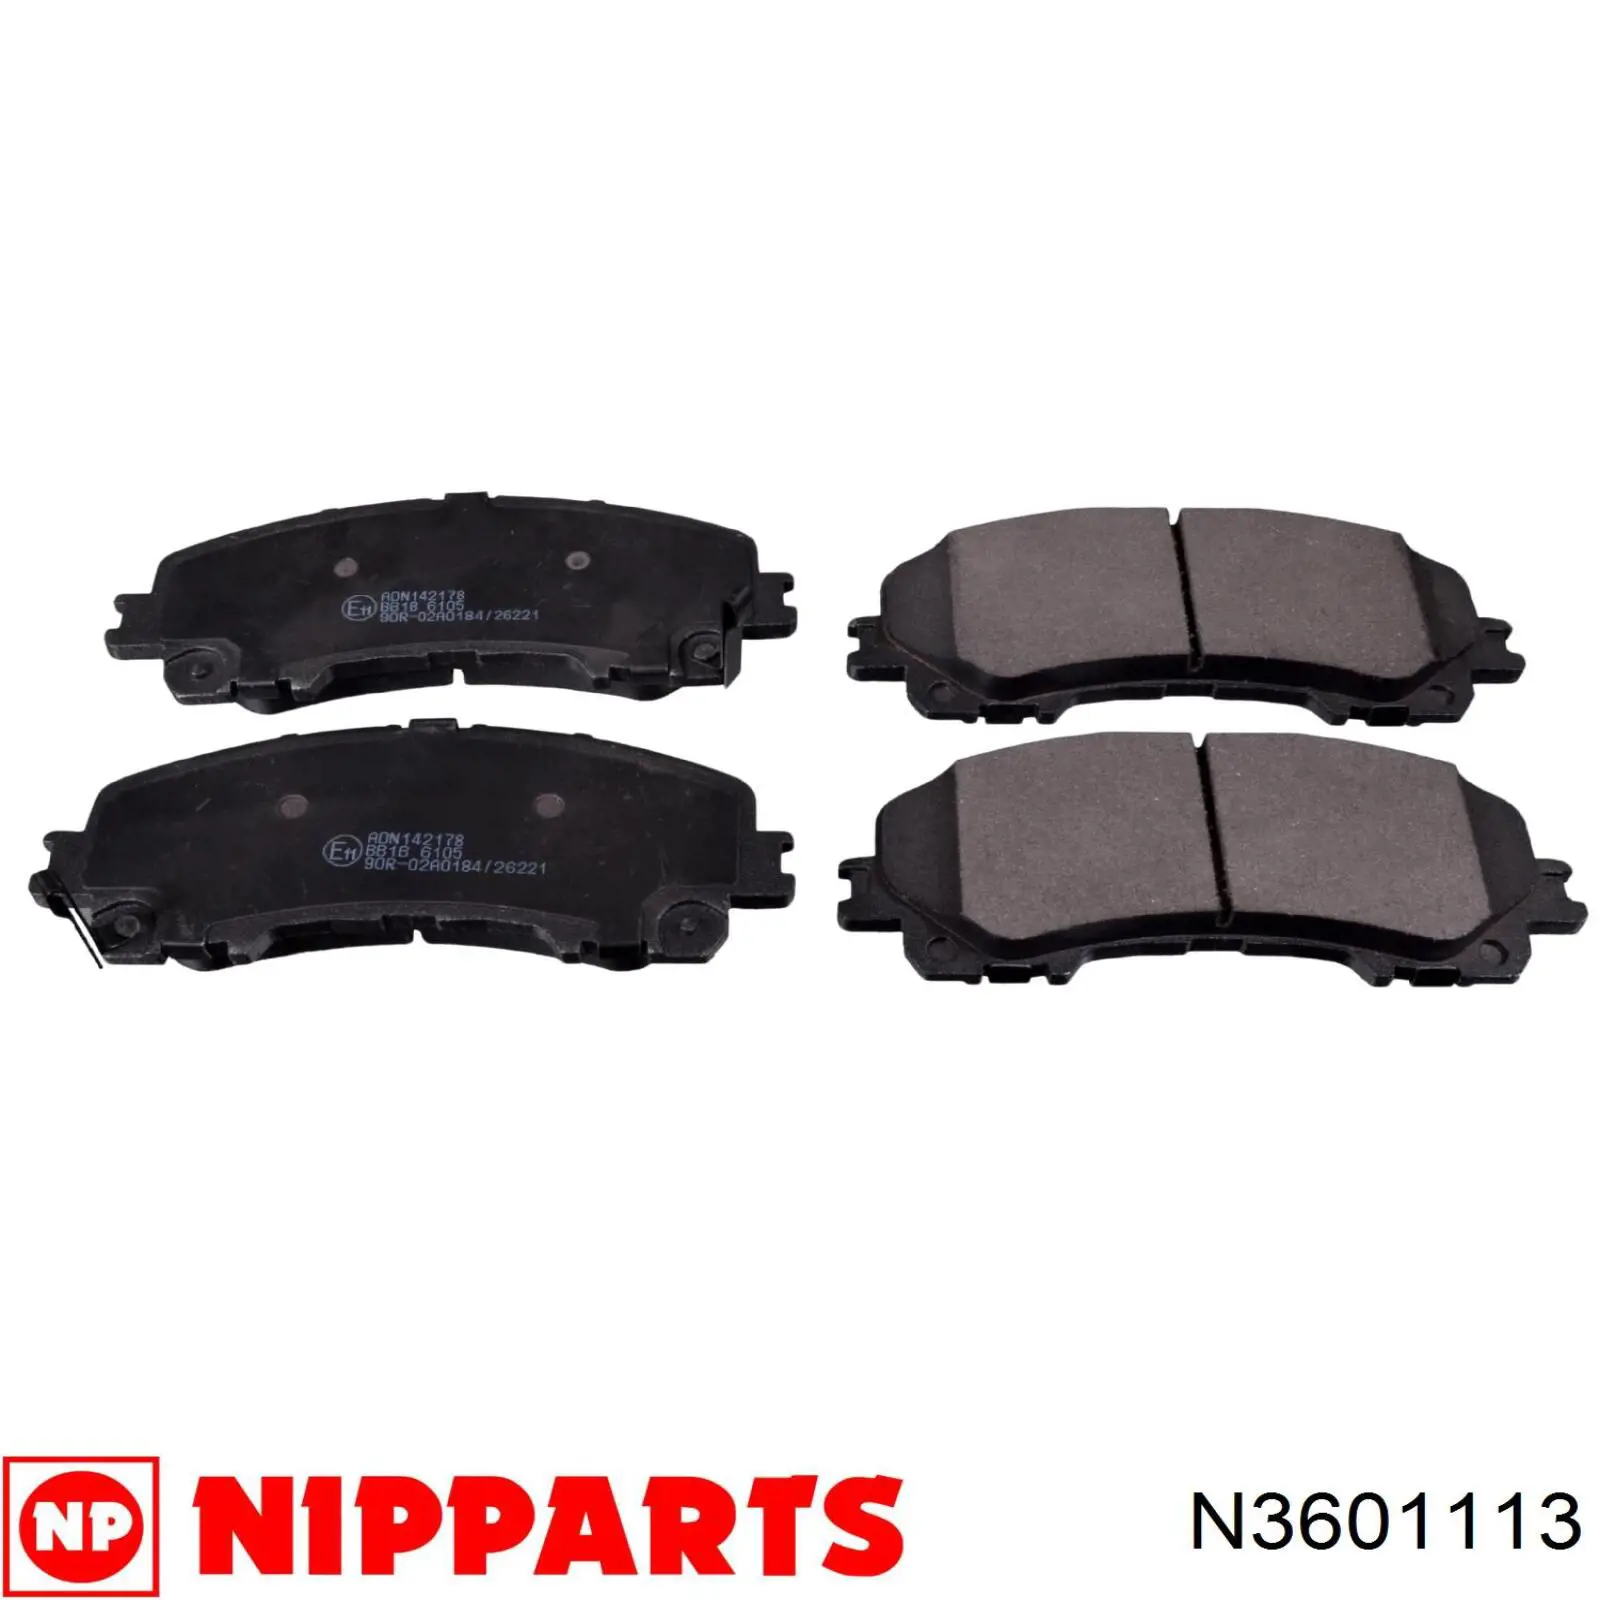 N3601113 Nipparts колодки тормозные передние дисковые